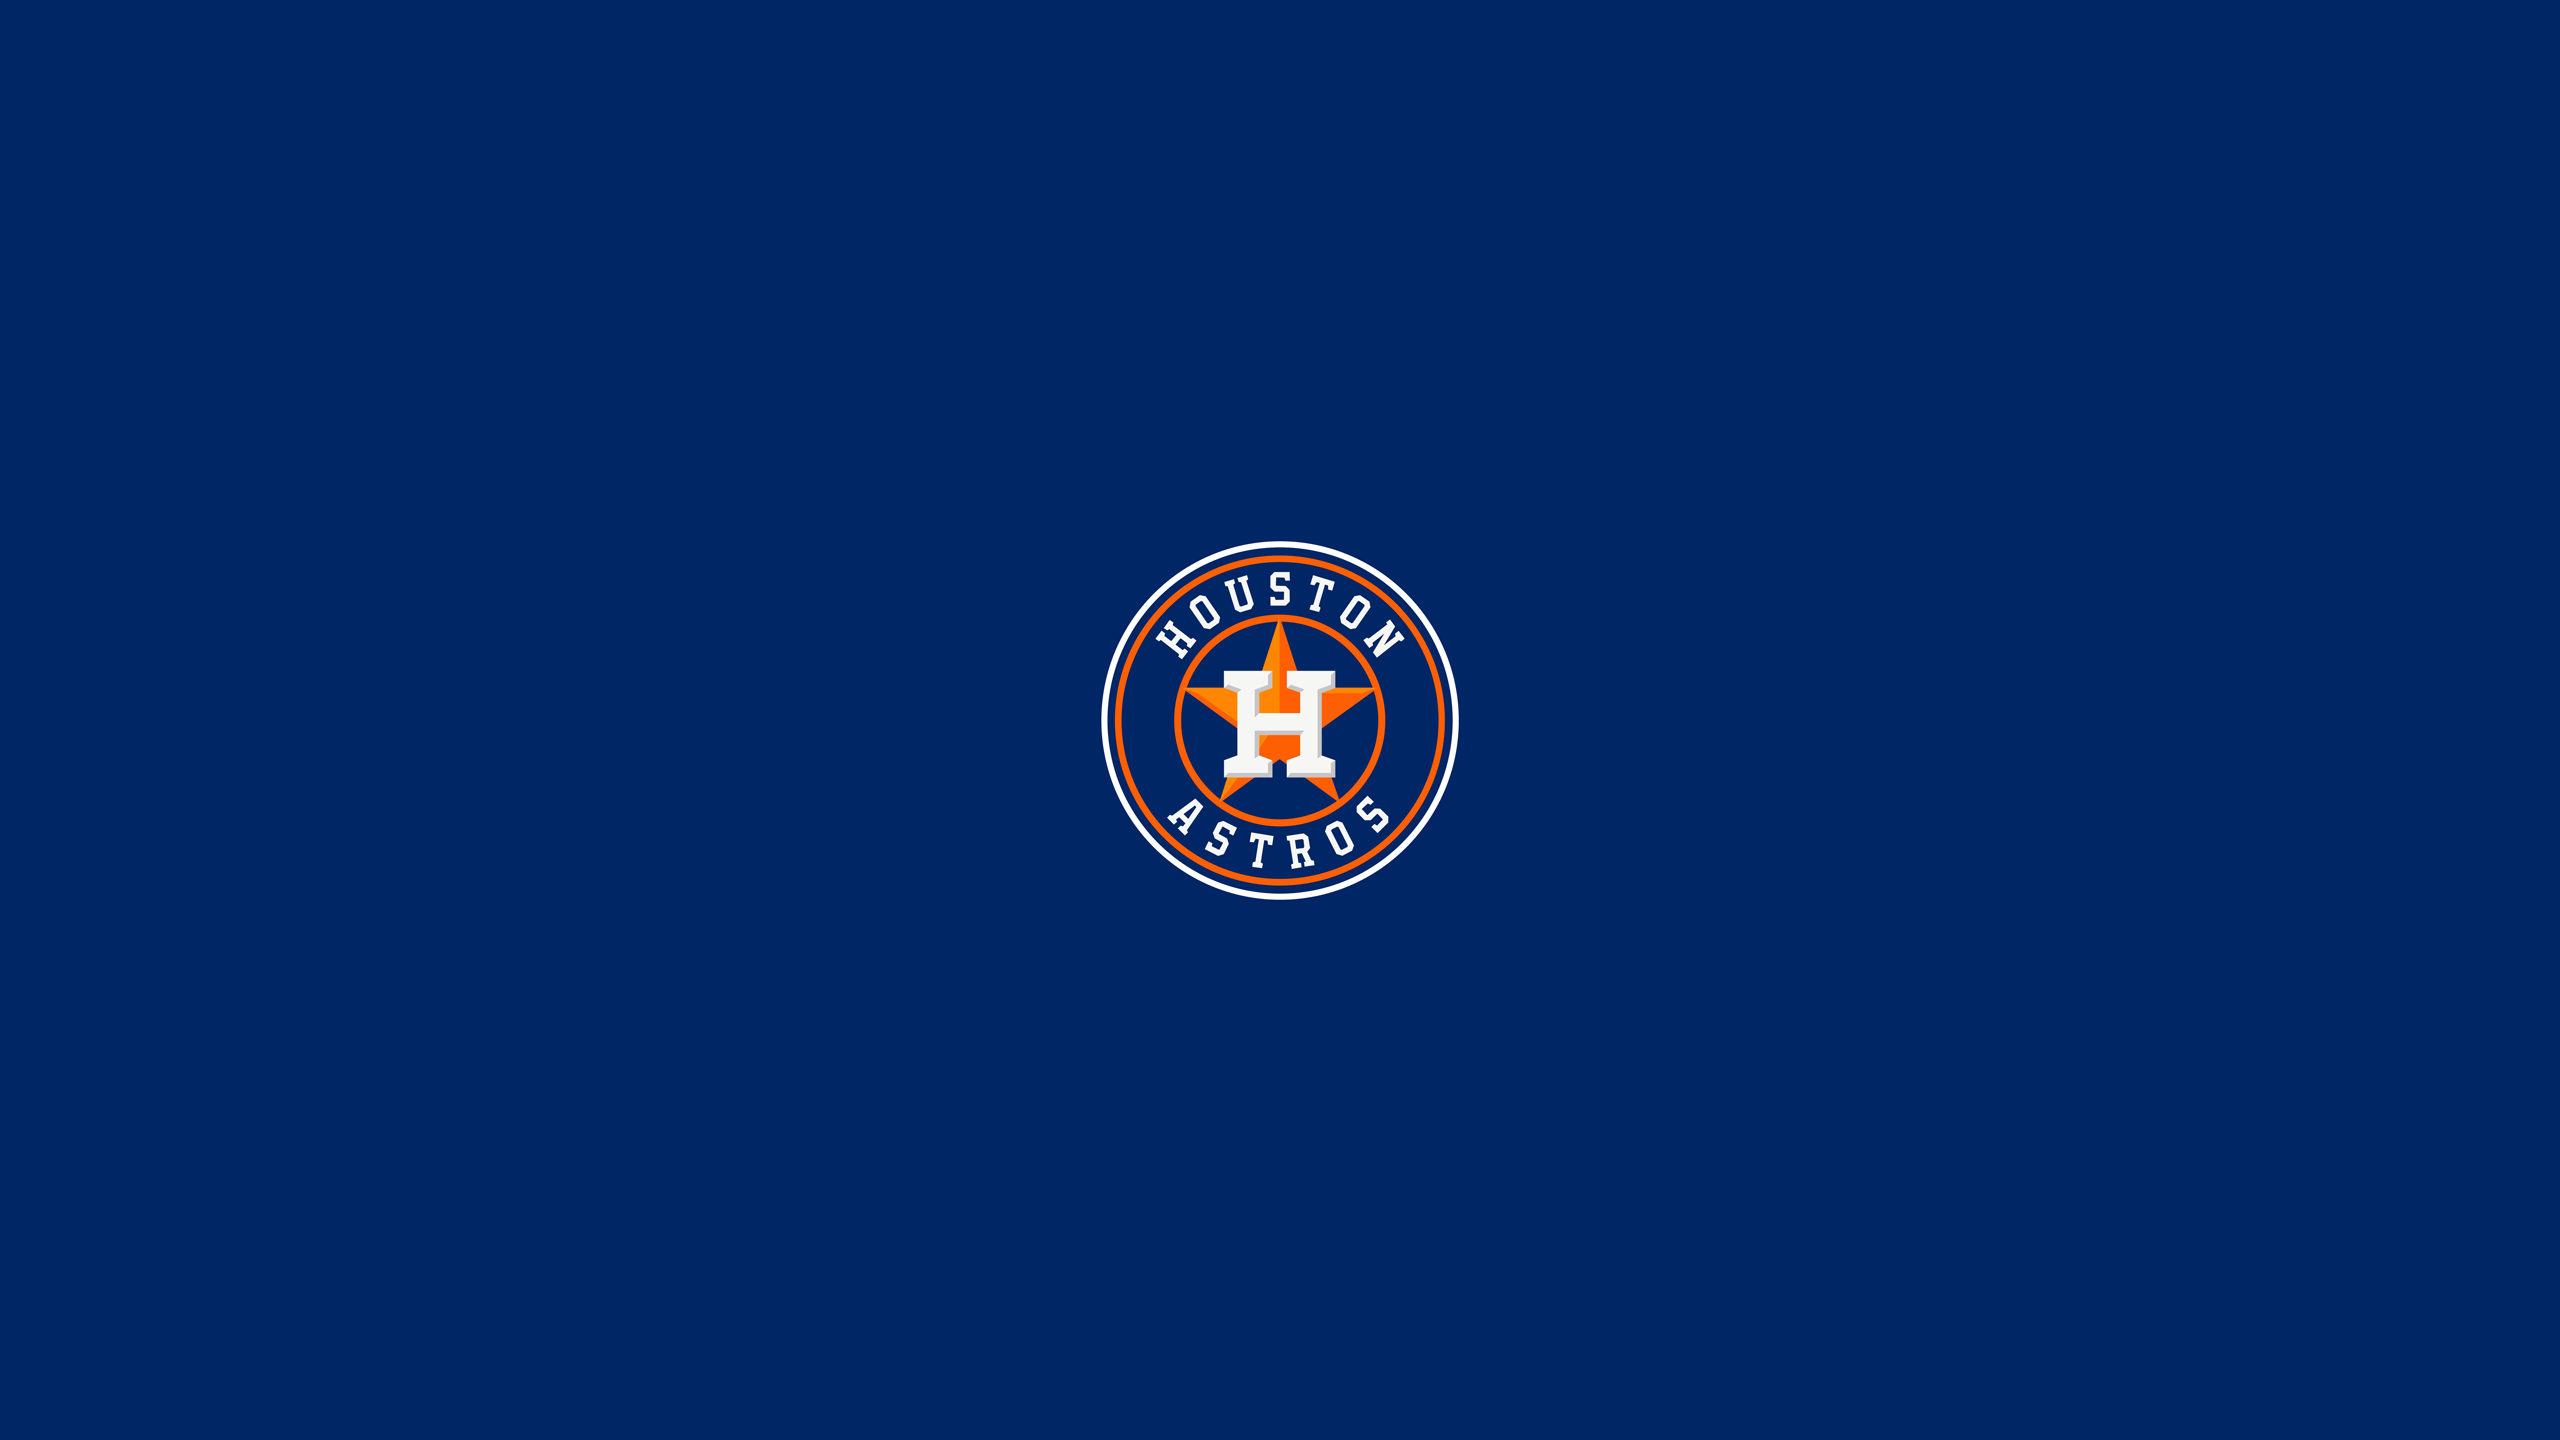 Houston Astros Image Thecelebritypix